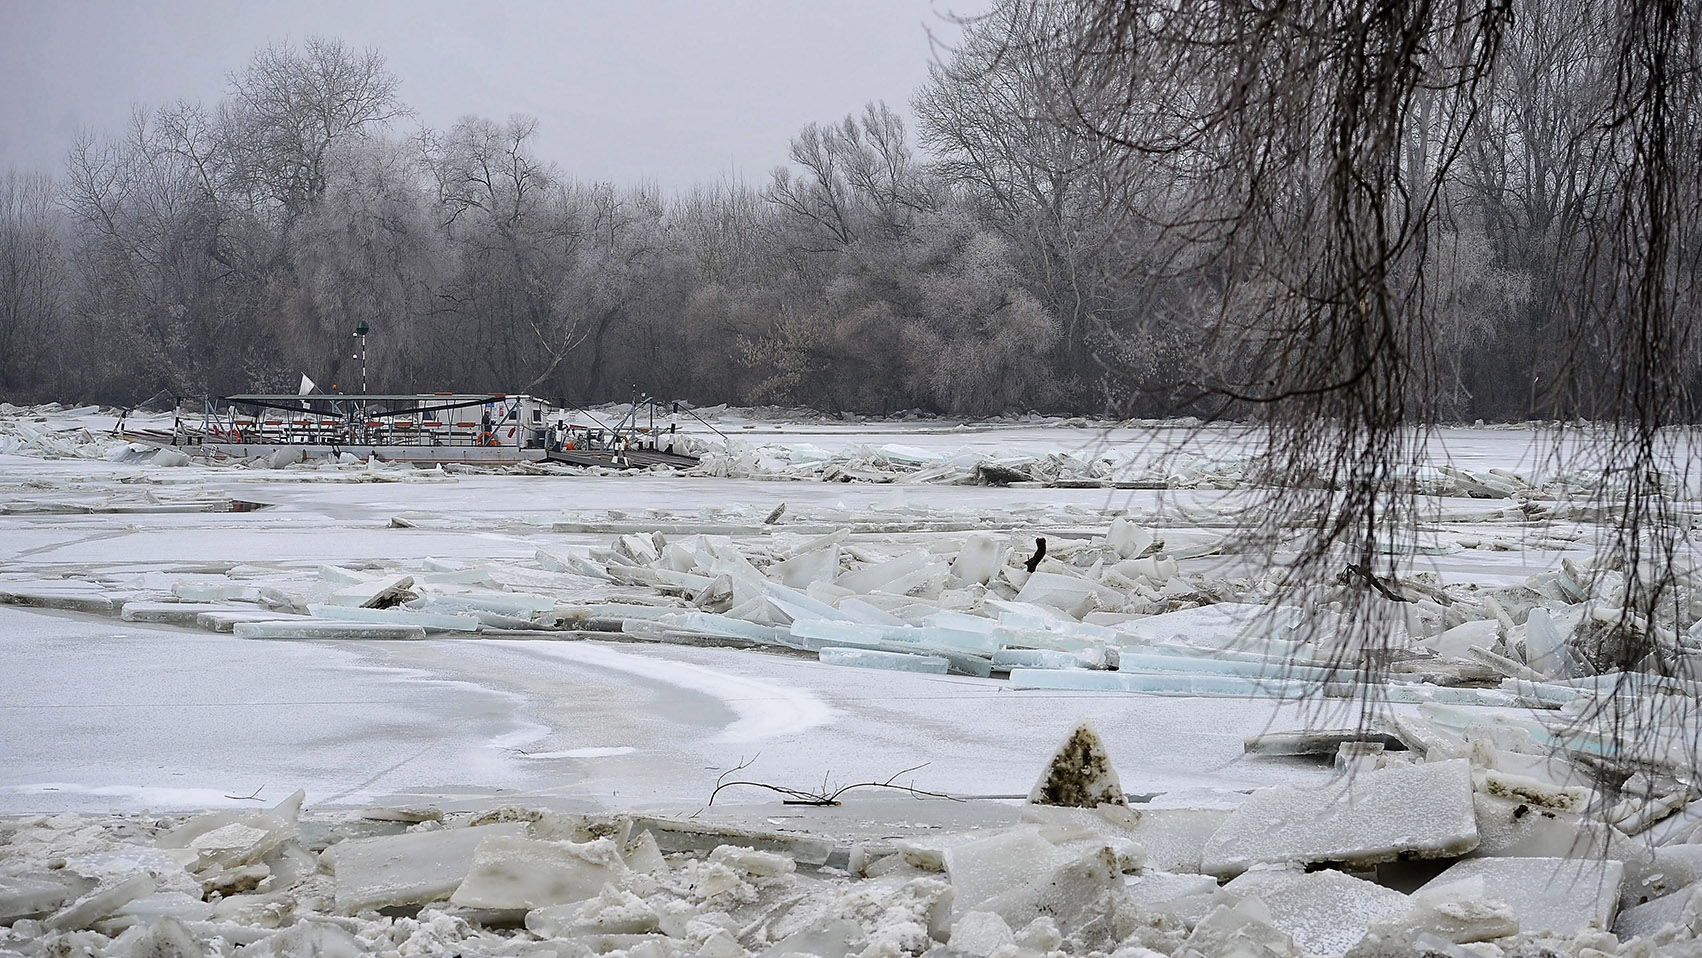 Tiszacsege, 2017. február 13. A levonuló jeges ár által elsodort és a folyó közepén a jégtáblák közé szorult tiszacsegei komp, a fedélzetén az éjjeliőrrel 2017. február 13-án. A szakemberek attól tartanak, hogy egy újabb jégmozgás összeroppantja a járművet, jelenleg helikoptert várnak a helyszínre, hogy azzal megpróbálják kimenteni a kompon tartózkodó férfit. MTI Fotó: Czeglédi Zsolt